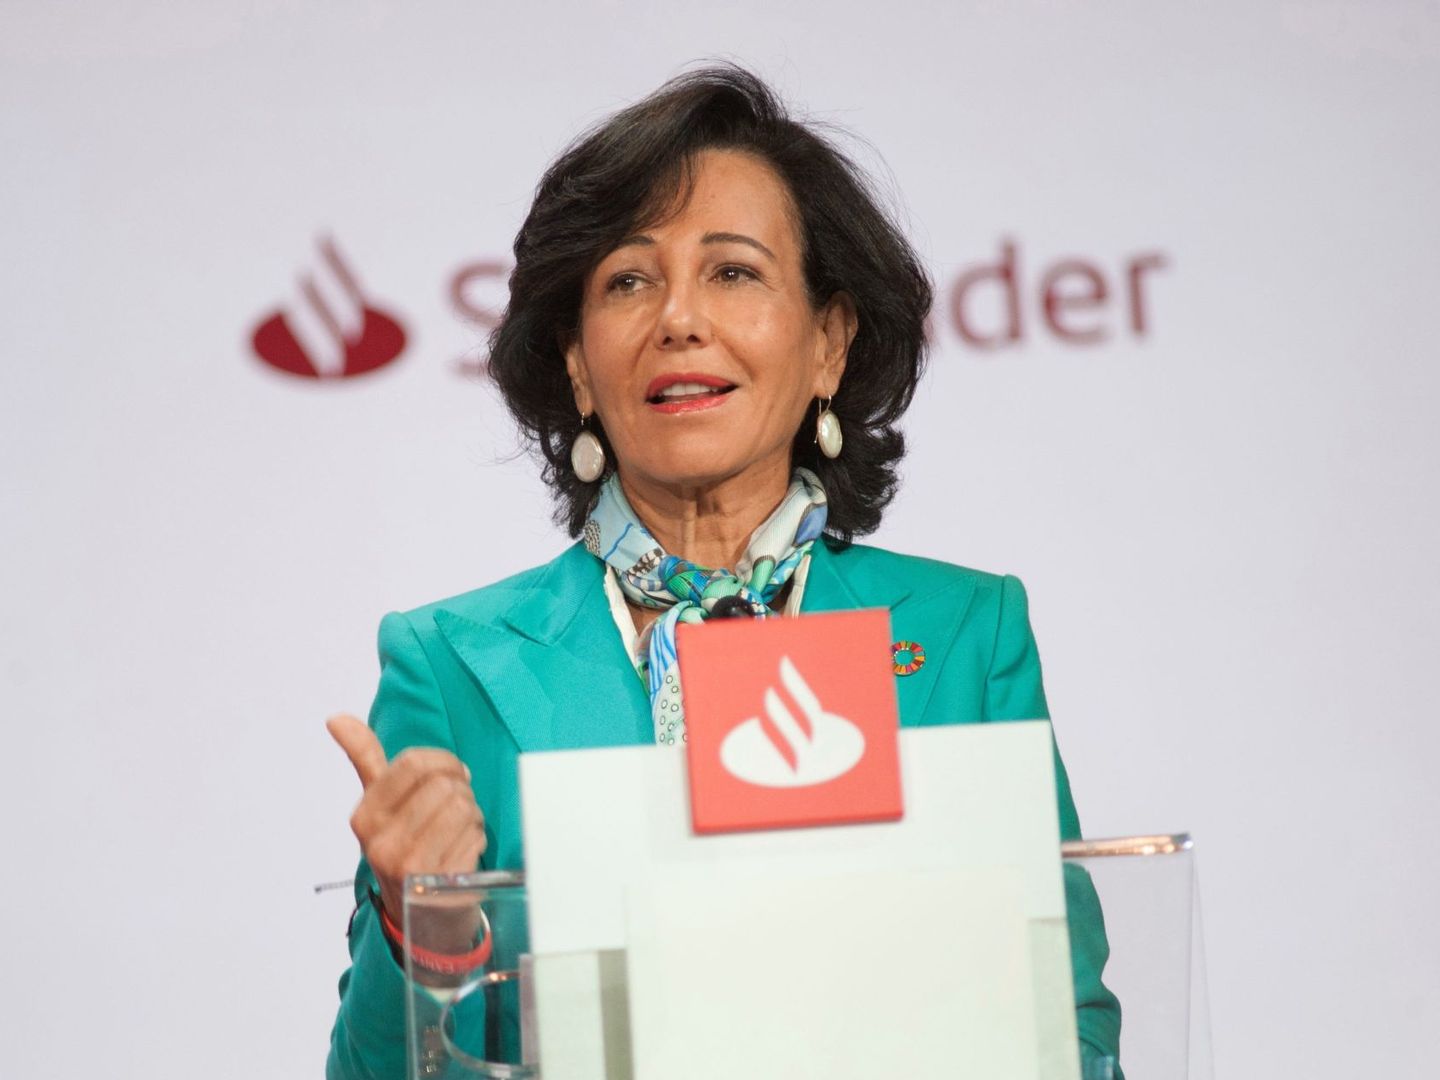 Ana Botín, presidenta de Santander. (EFE)